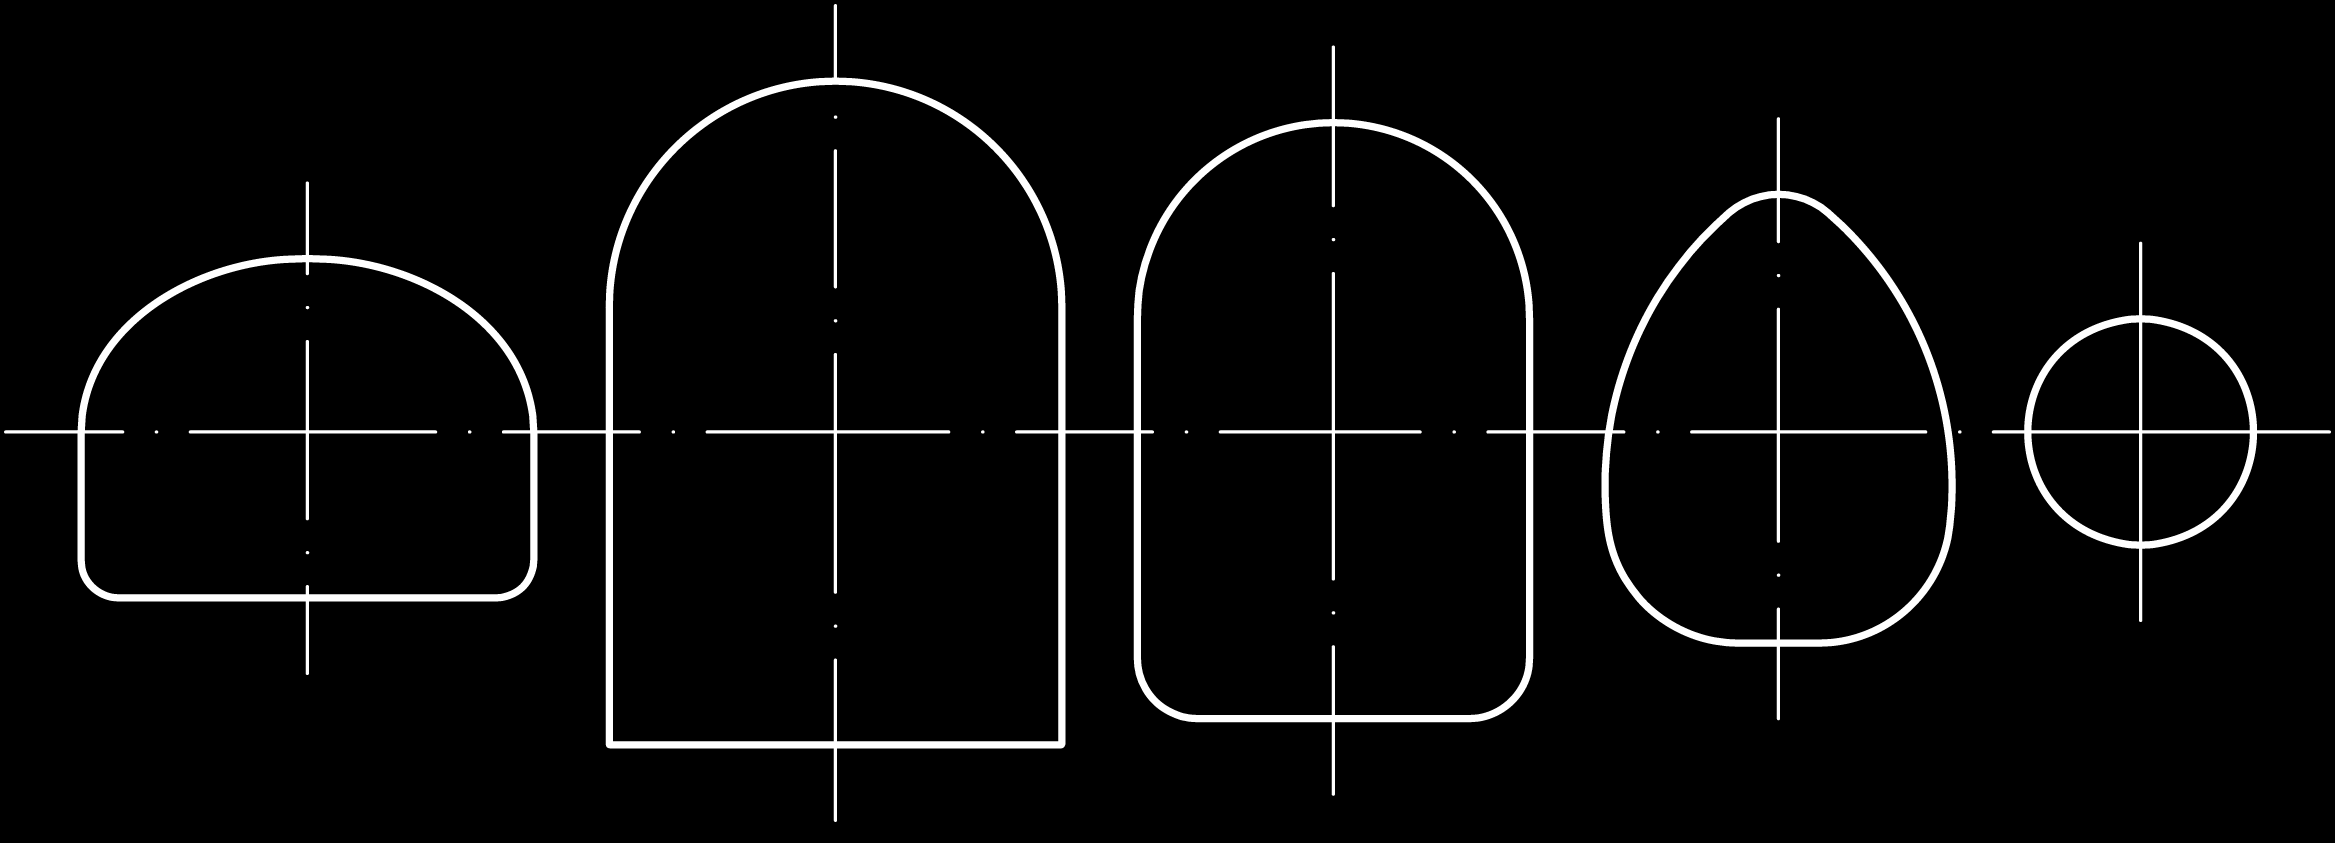 3.2 SONG V0 3.2.2 Uspořádání trupových přepážek Trup je tvořen přepážkami a podélnými nosnými prvky. V trupu jsou dva výřezy, do kterých se zasouvjí nosníky průběžného křídla. Obrázek 3.